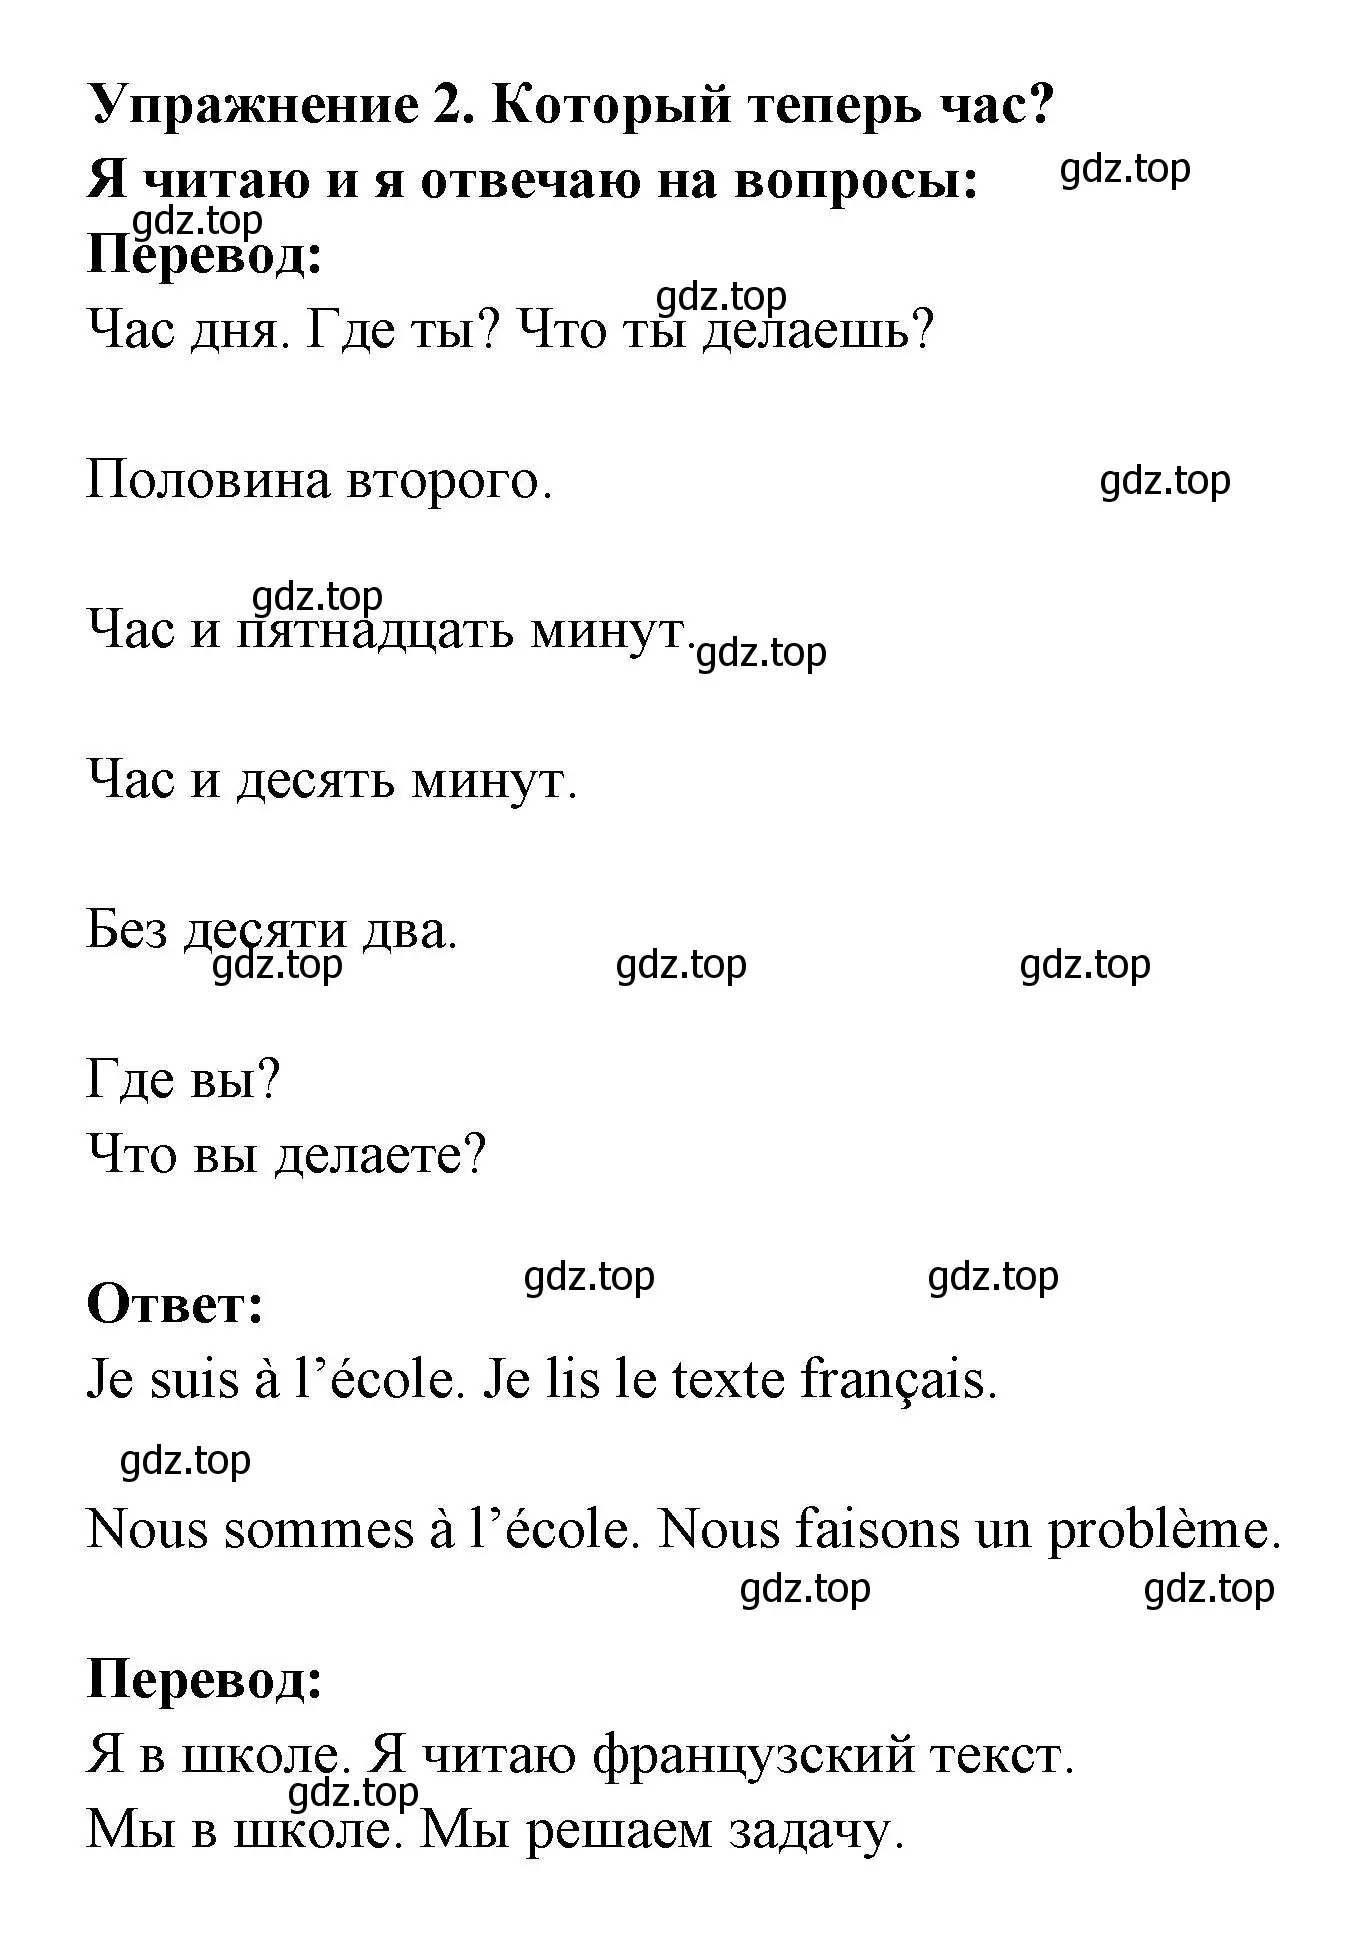 Решение  62 (страница 62) гдз по французскому языку 3 класс Кулигин, Кирьянова, учебник 2 часть